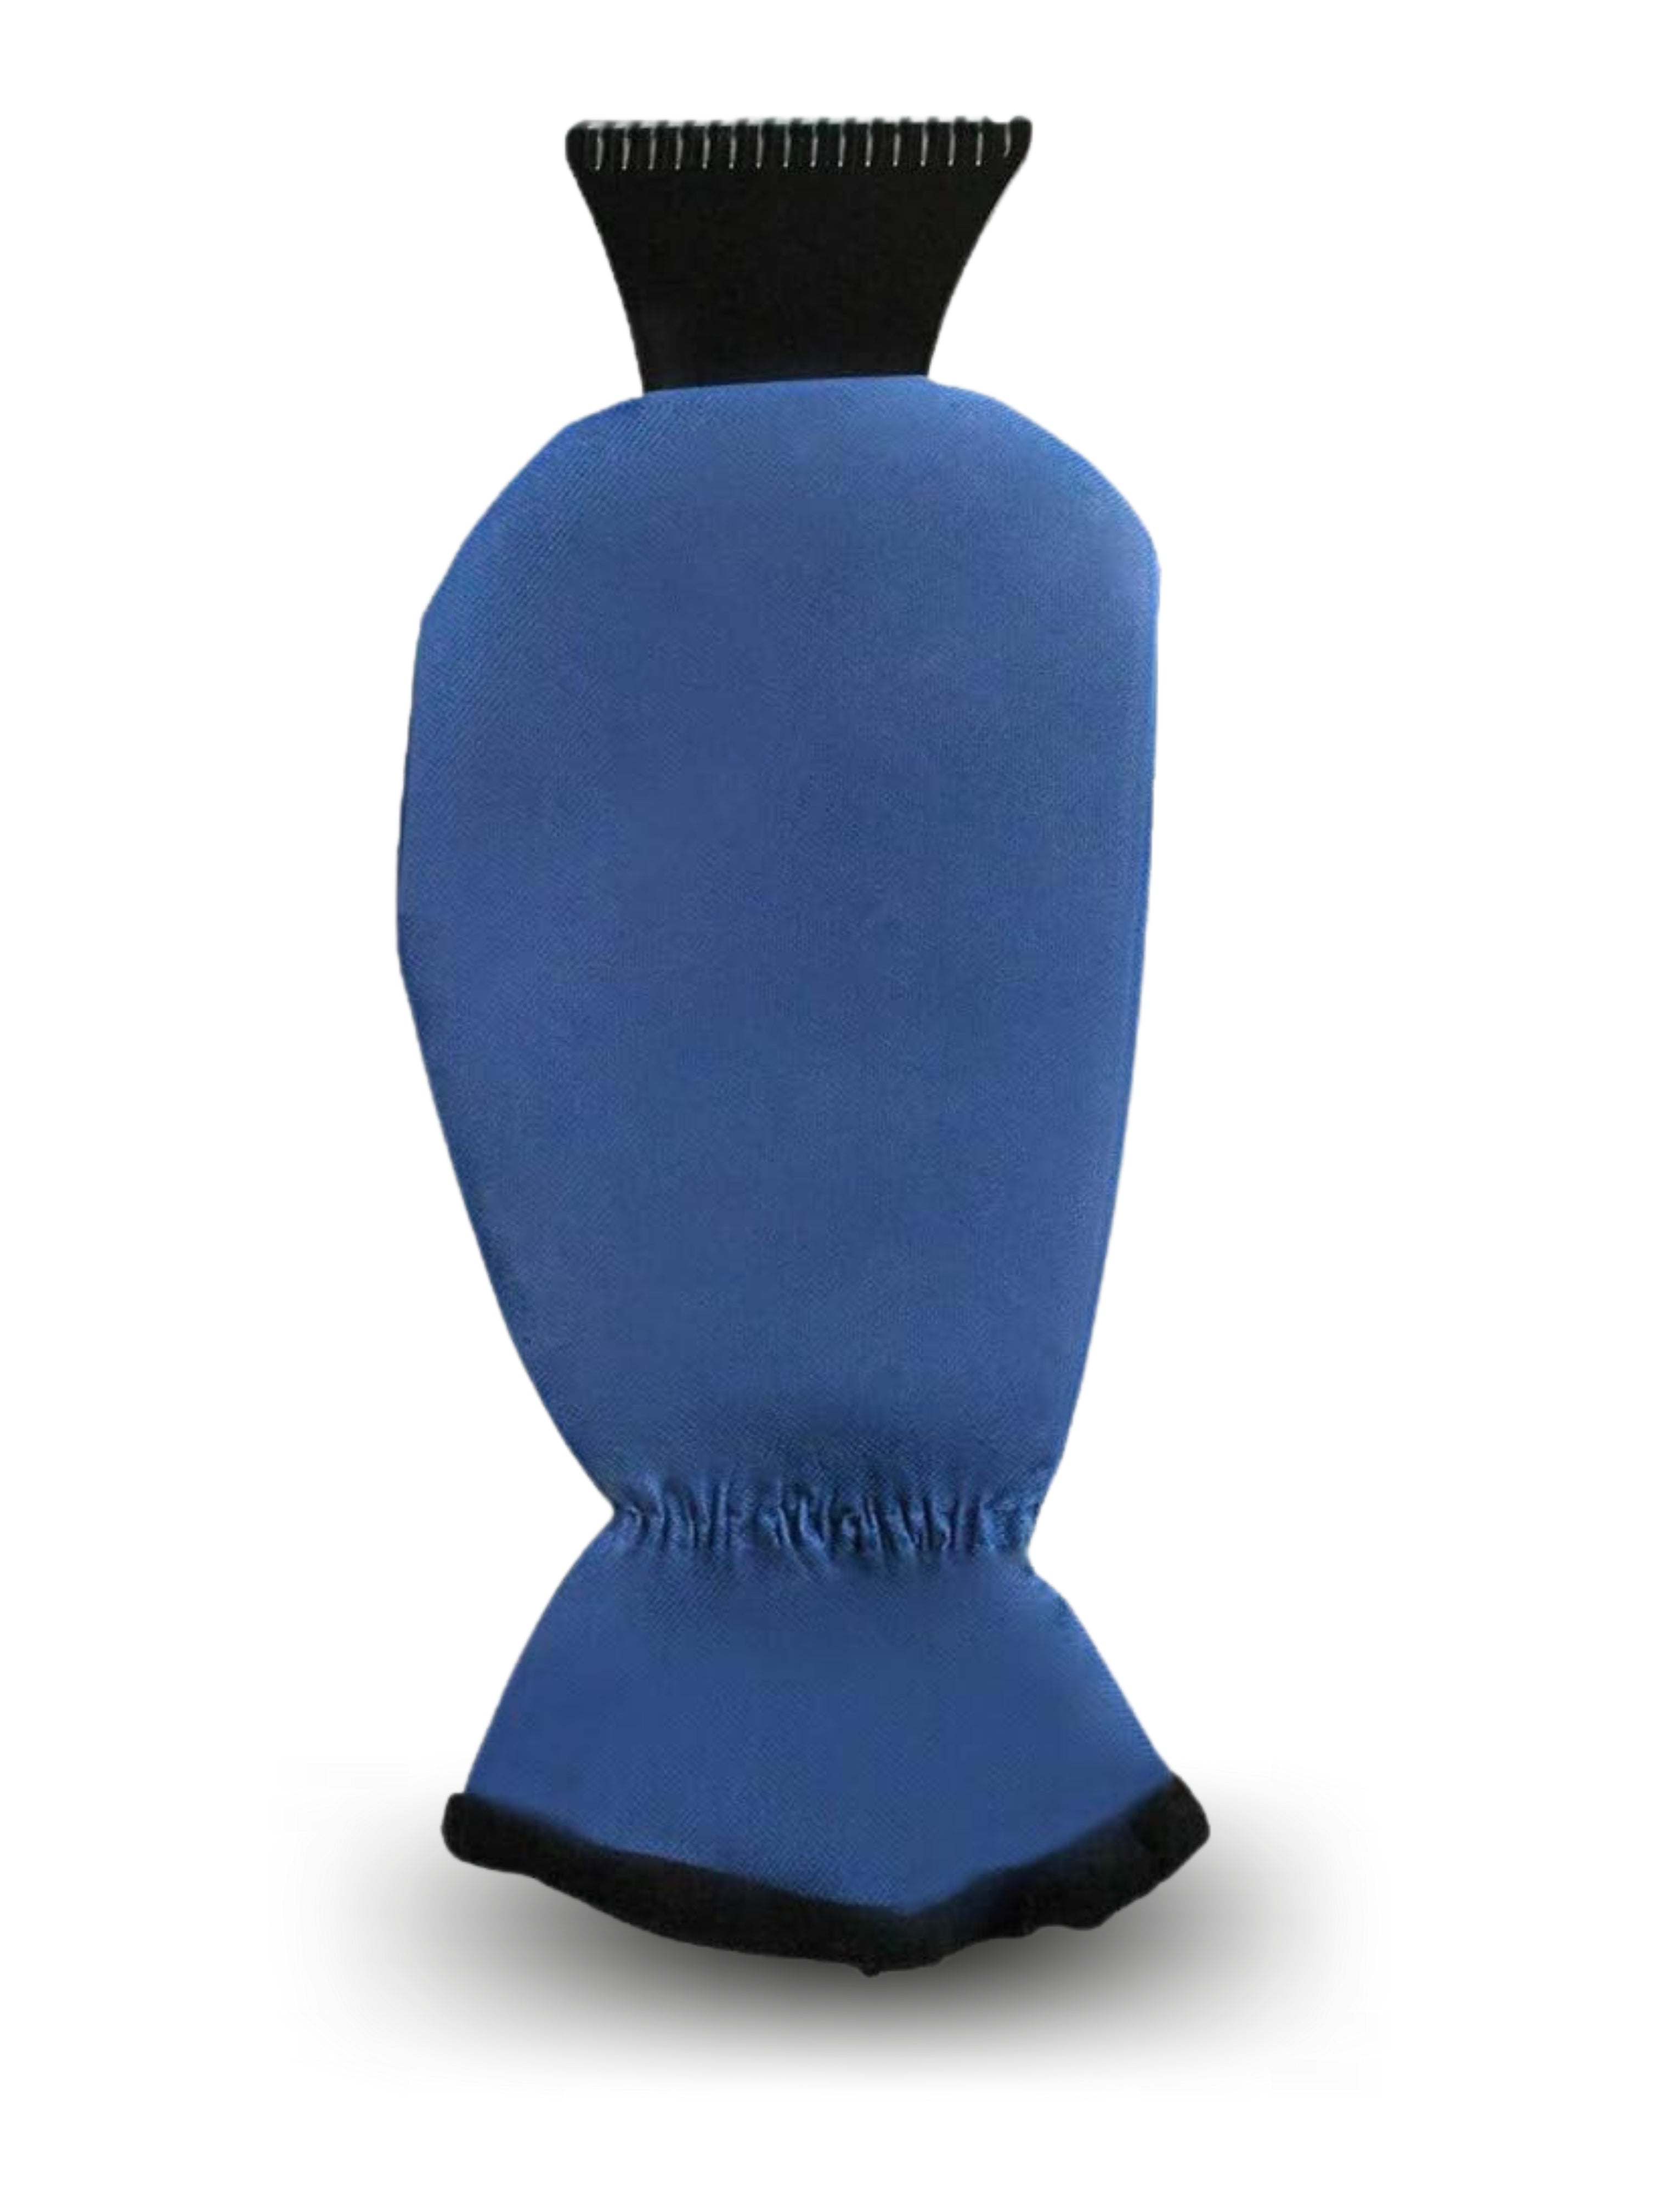 Eiskratzer mit Handschuh (blau, PS & PolJater, 116g) als Werbemittel Auf